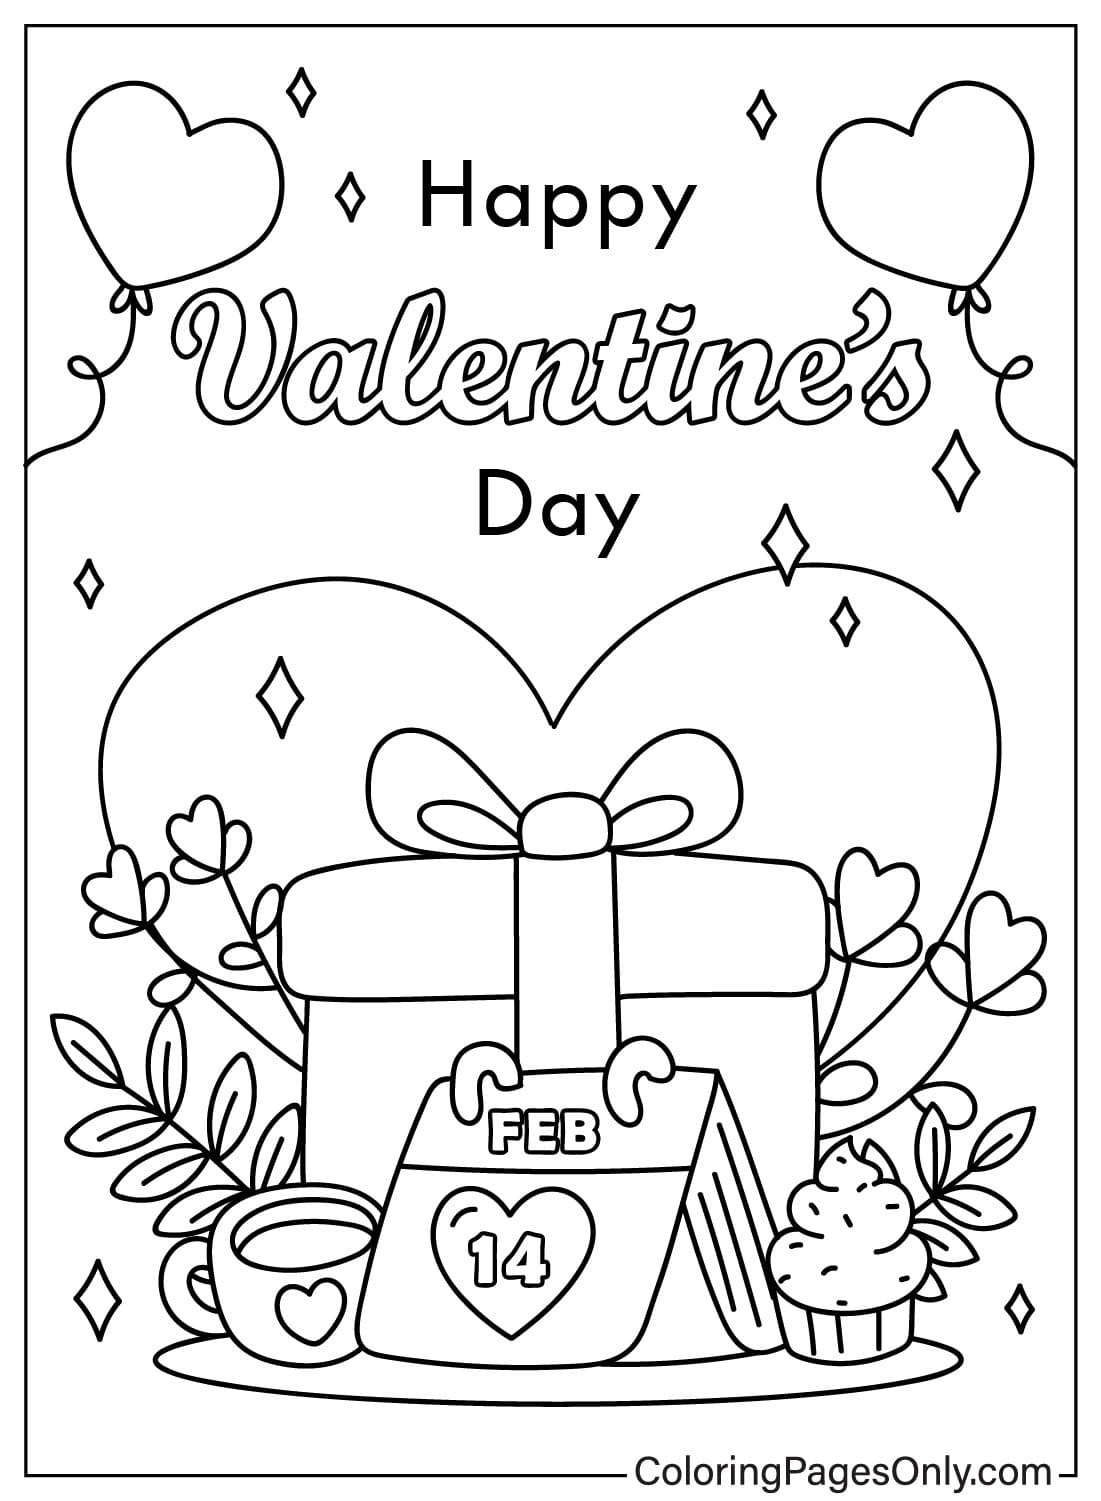 Раскраски ко Дню святого Валентина. Изображения из открыток ко Дню святого Валентина.